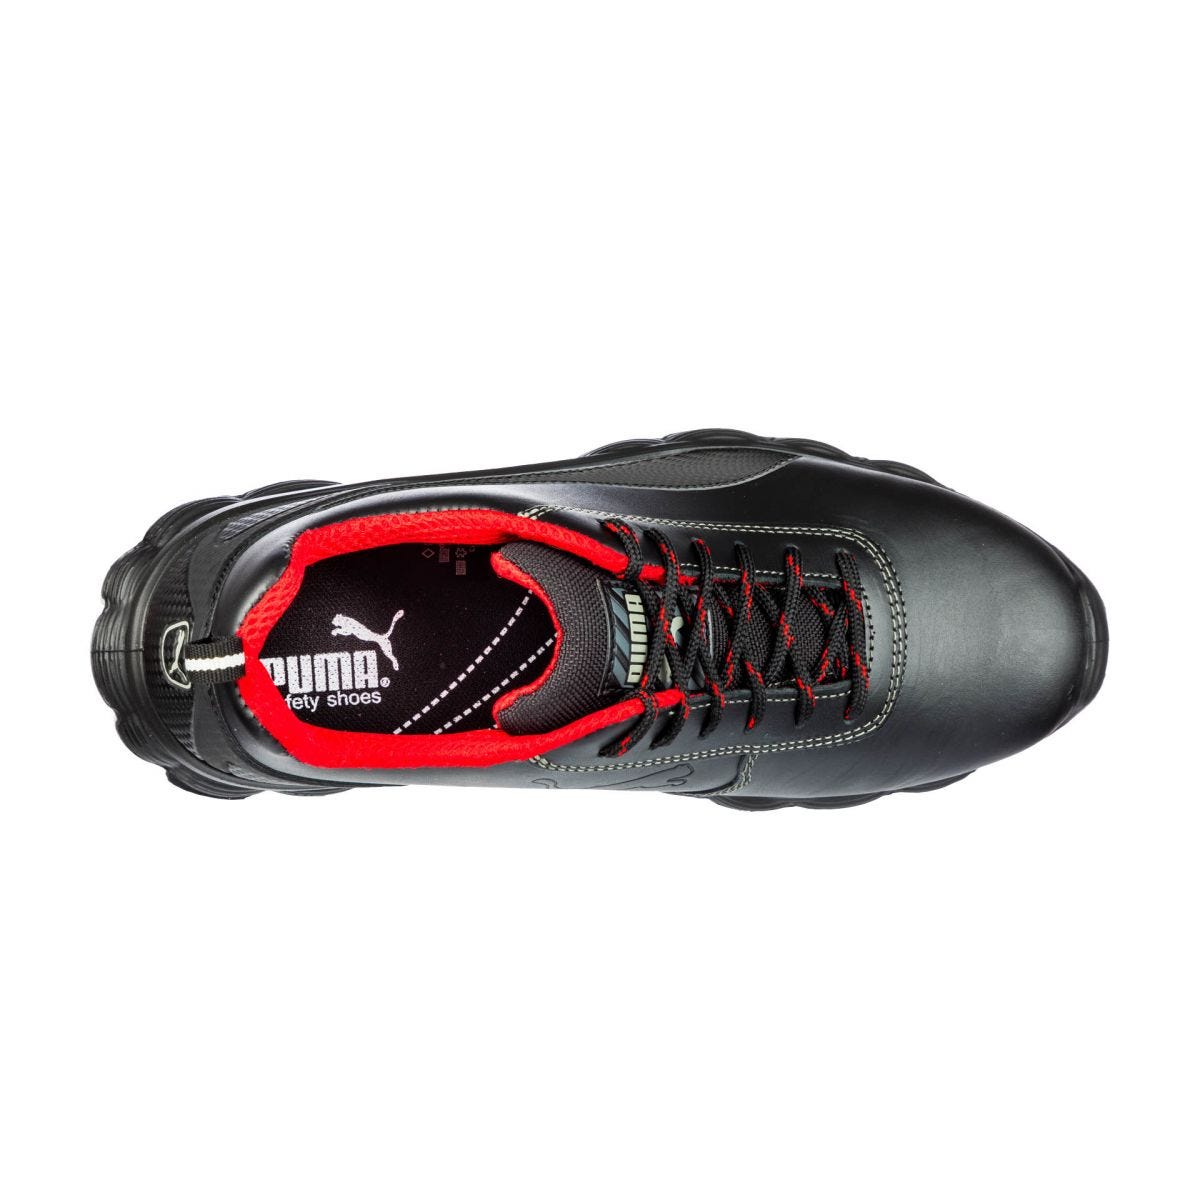 Chaussures de sécurité Condor low S3 ESD SRC noir - Puma - Taille 46 1